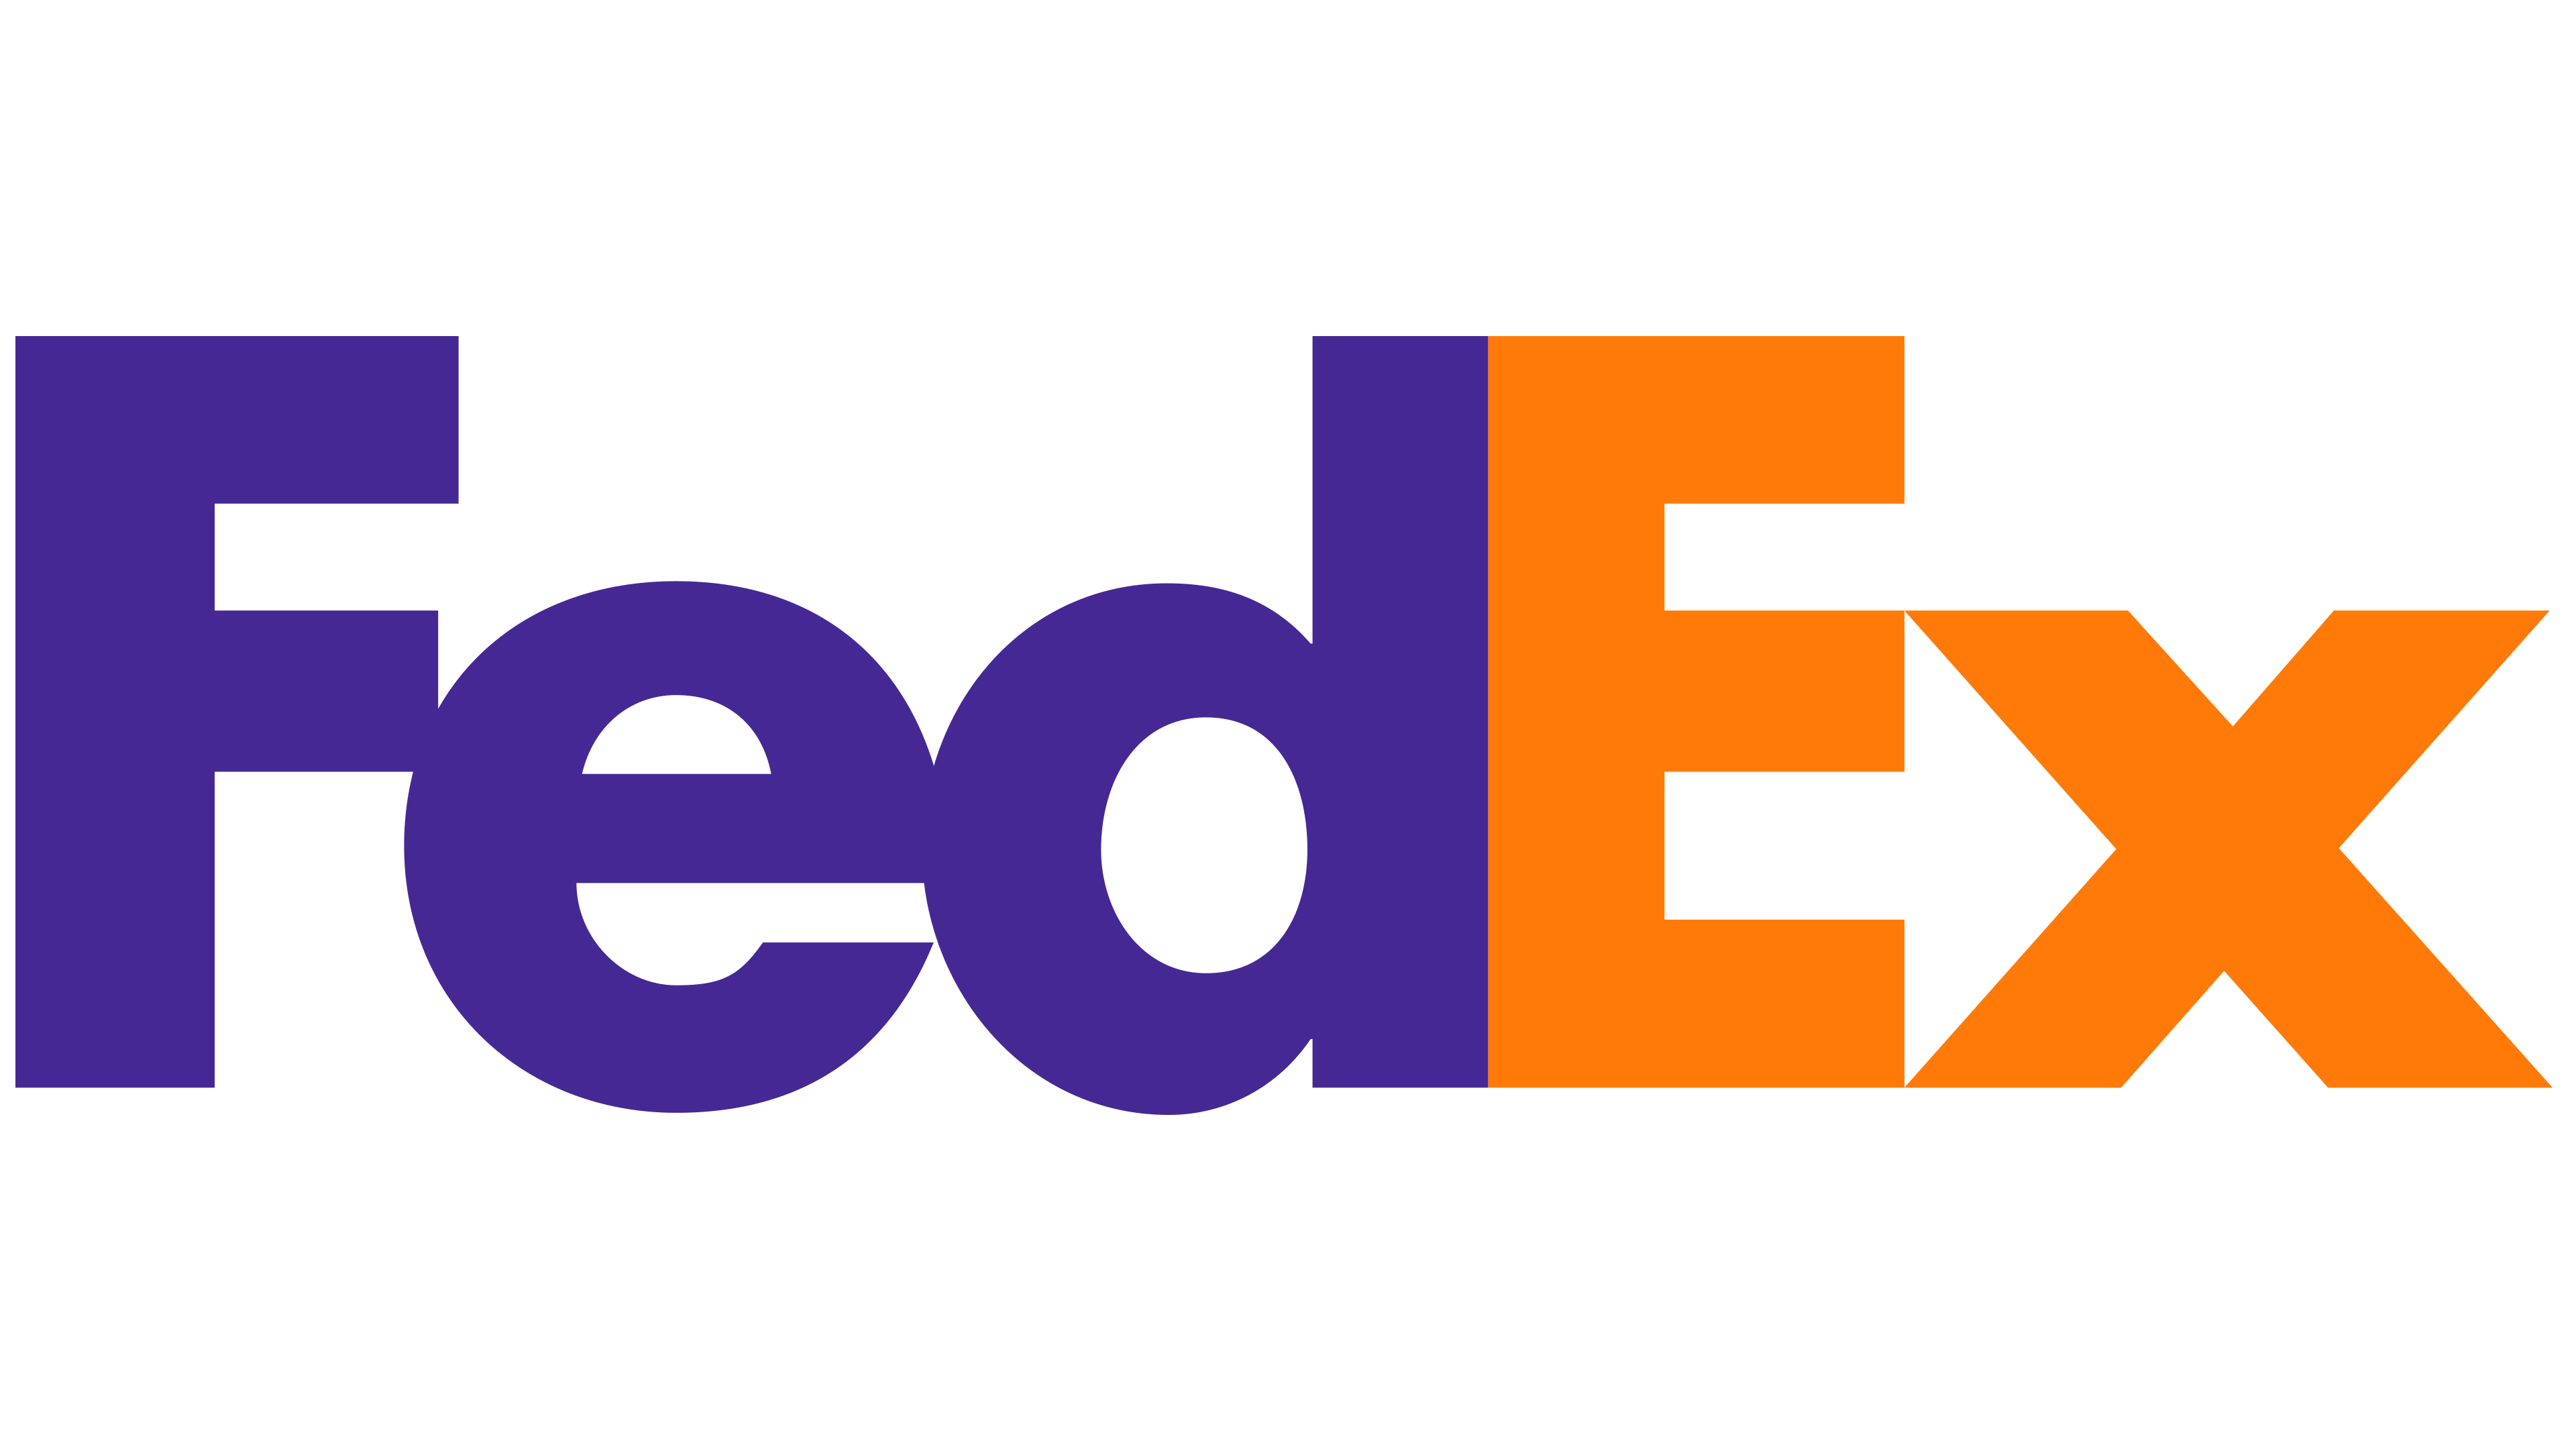 Verhaal achter FedEx logo